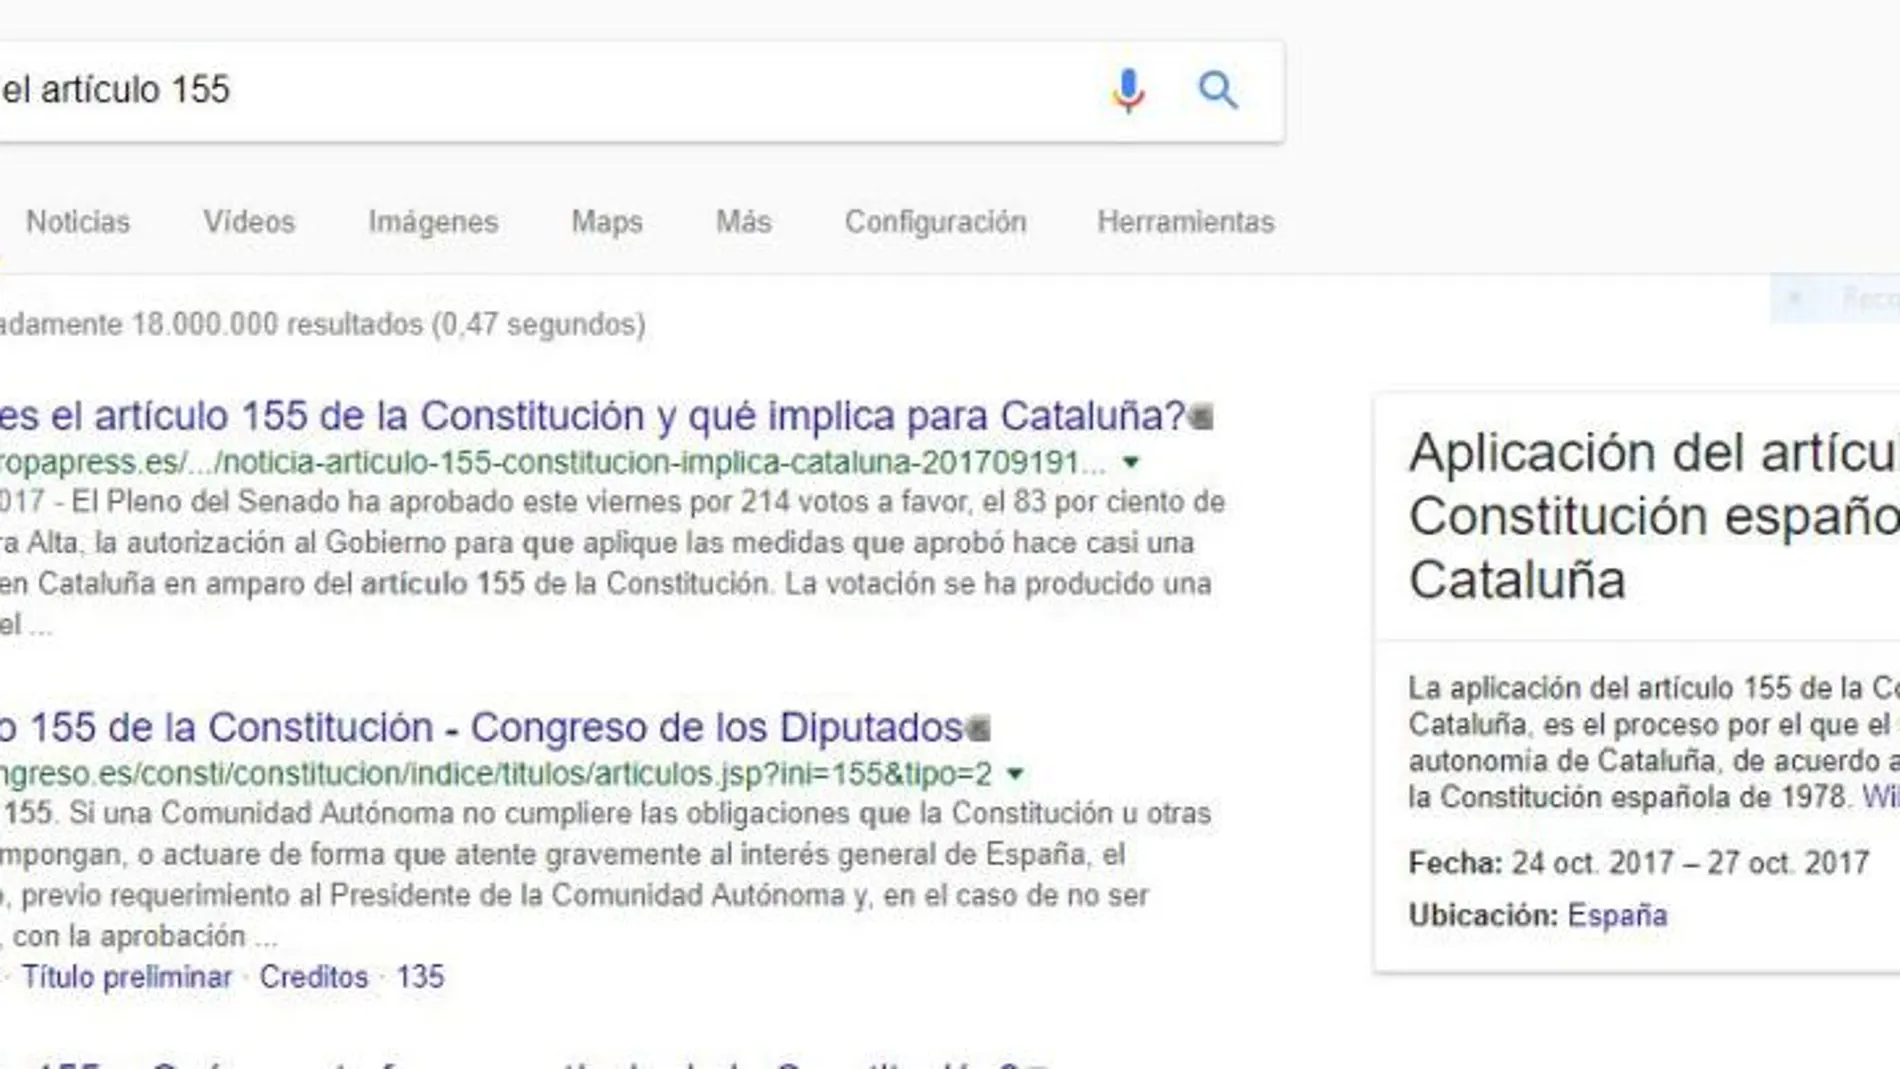 El artículo 155, lo más buscado en Google en 2017